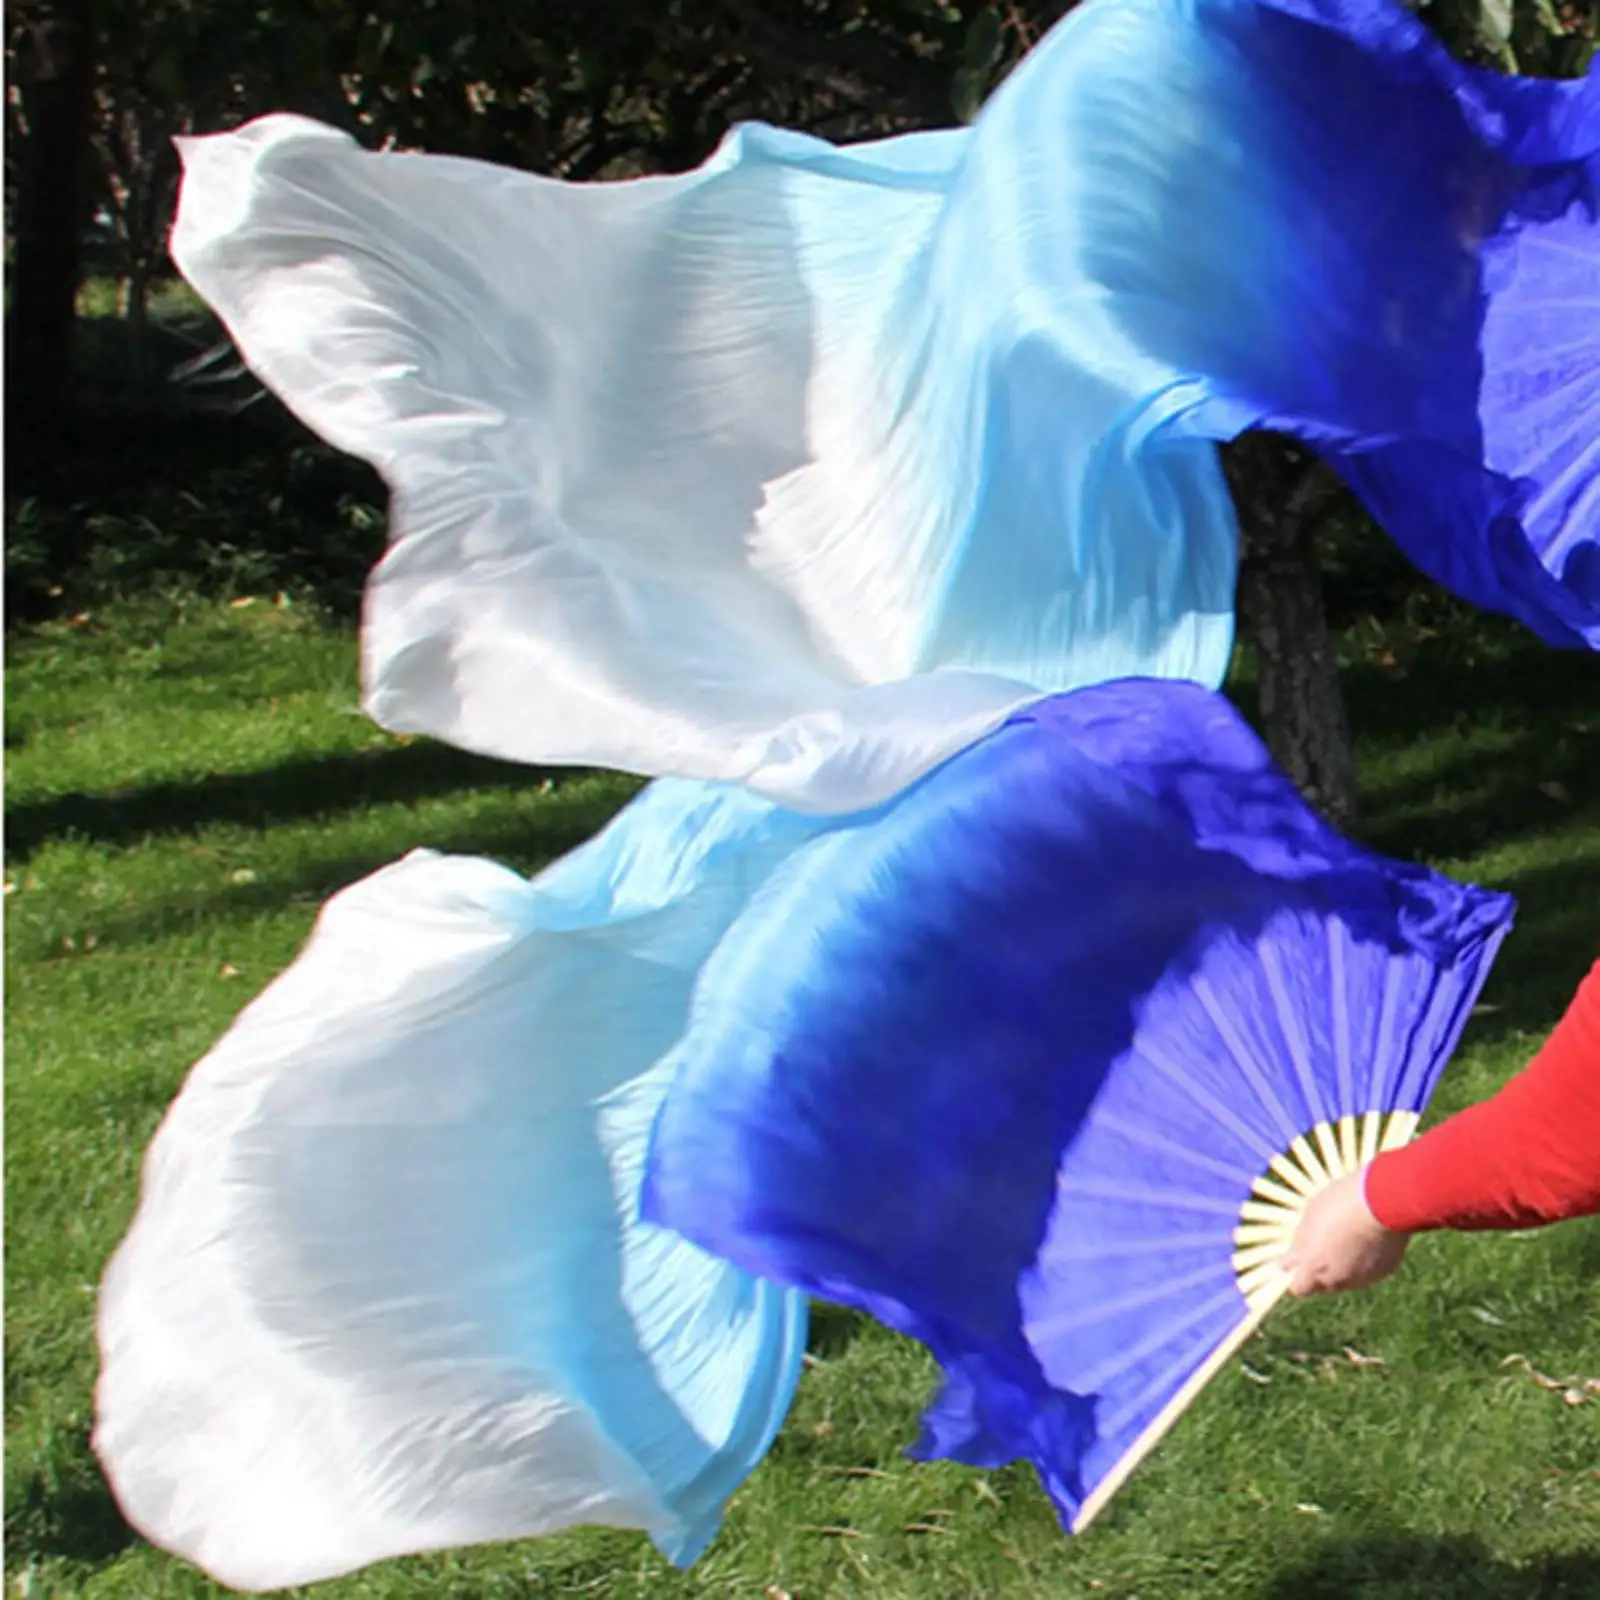 2Pcs Belly Dance Fan Veils Dyed Silk Fan Length 180cm Handmade Flow Fans Foldable Fan for Lady Costume Accessories Performance